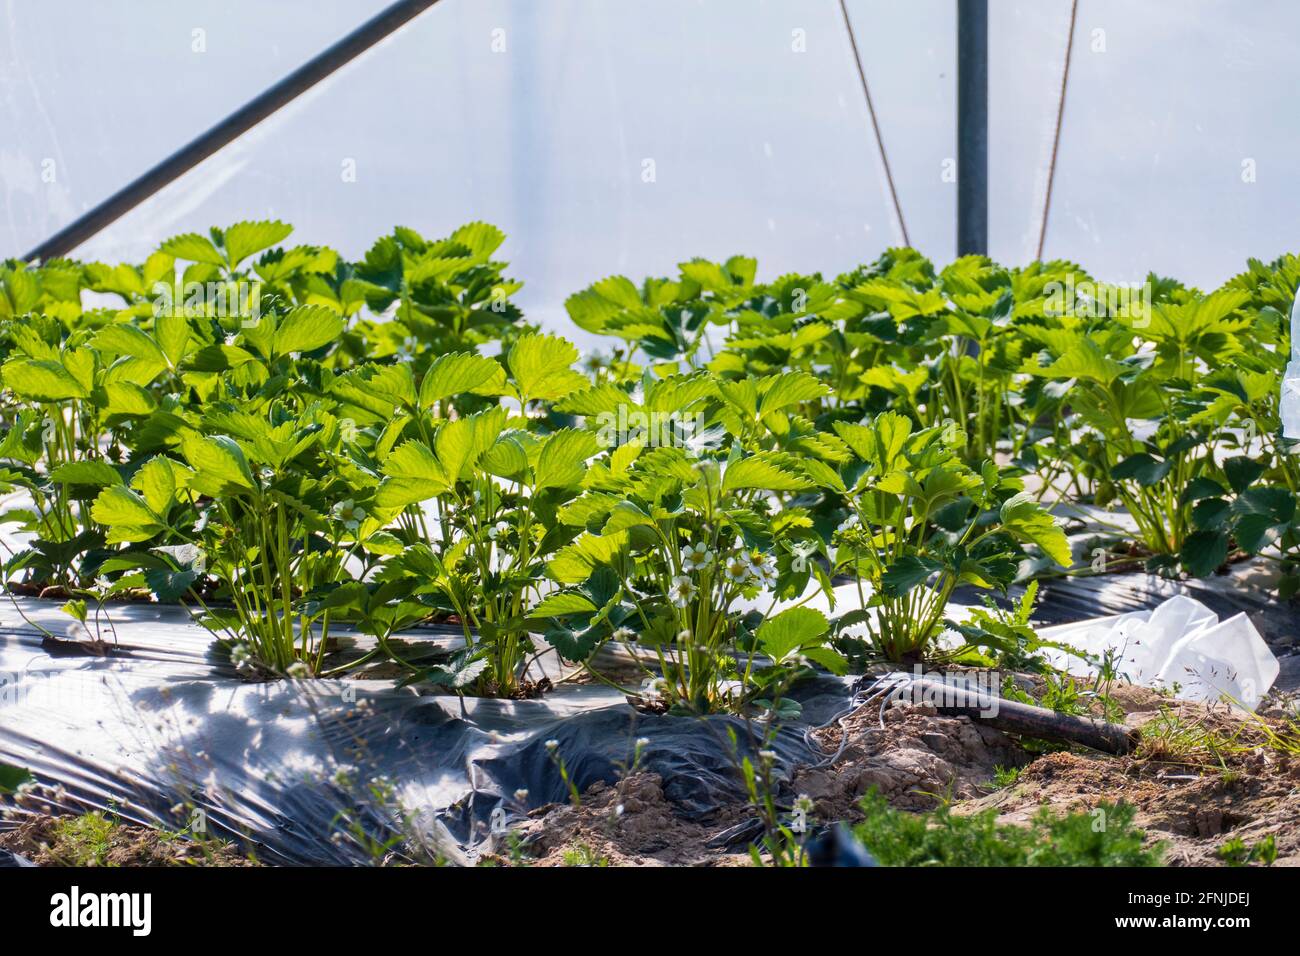 Erdbeer Pflanze wächst geschützt im Folientunnel Stock Photo